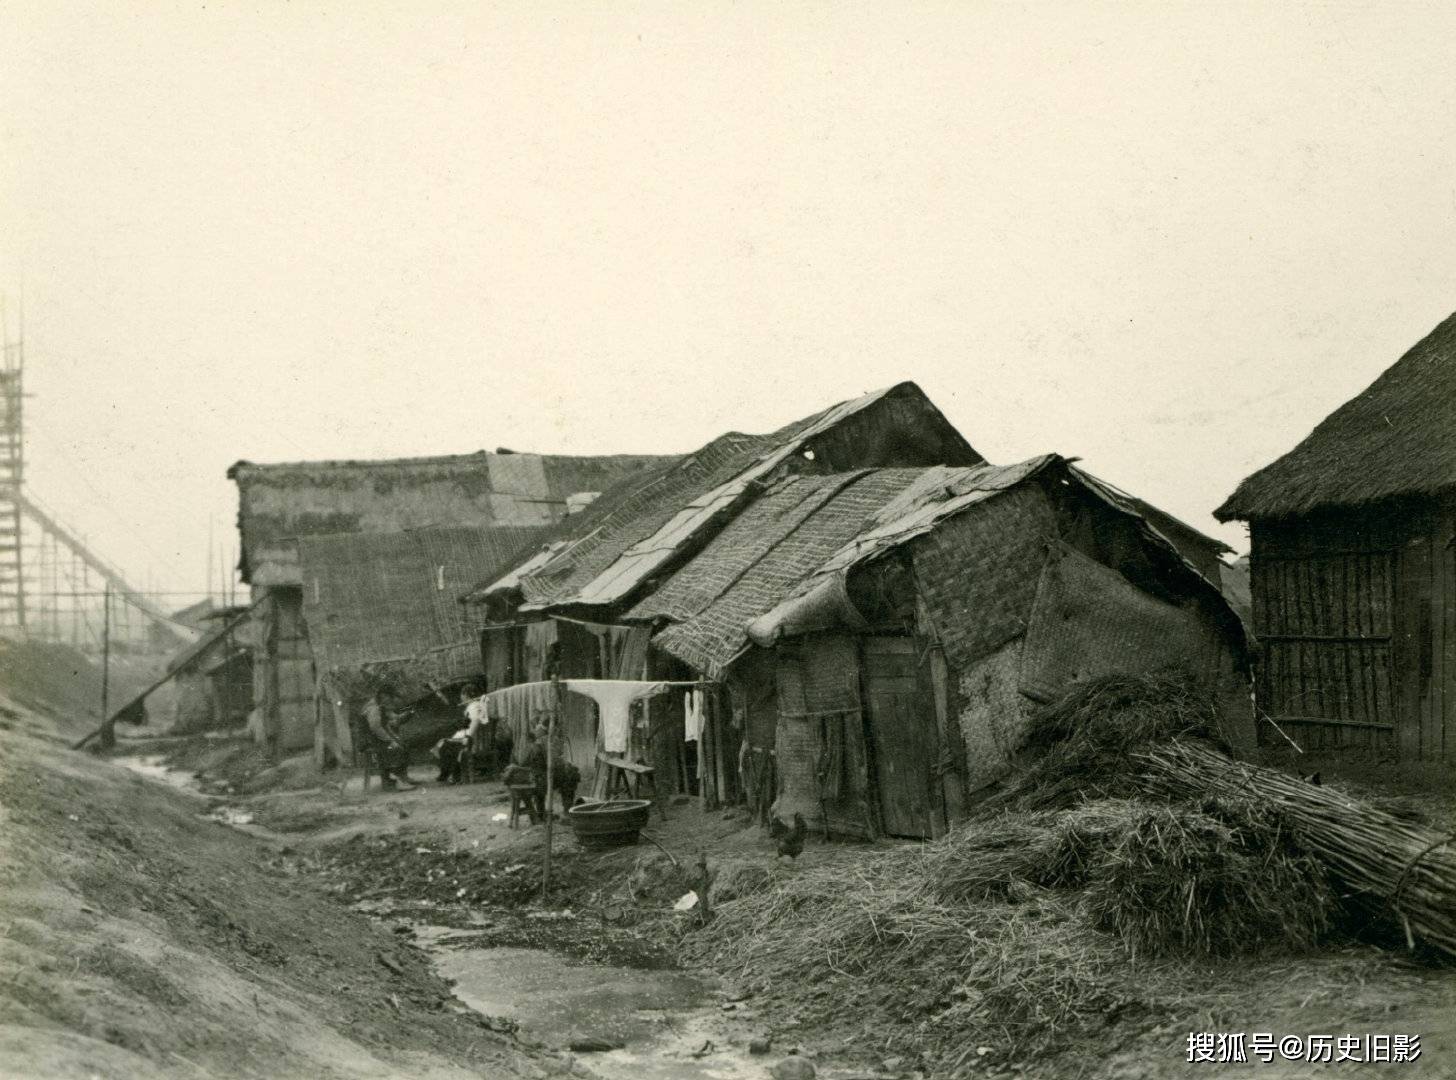 1909年汉口老照片,汉口郊外农村景象与贫民的房屋